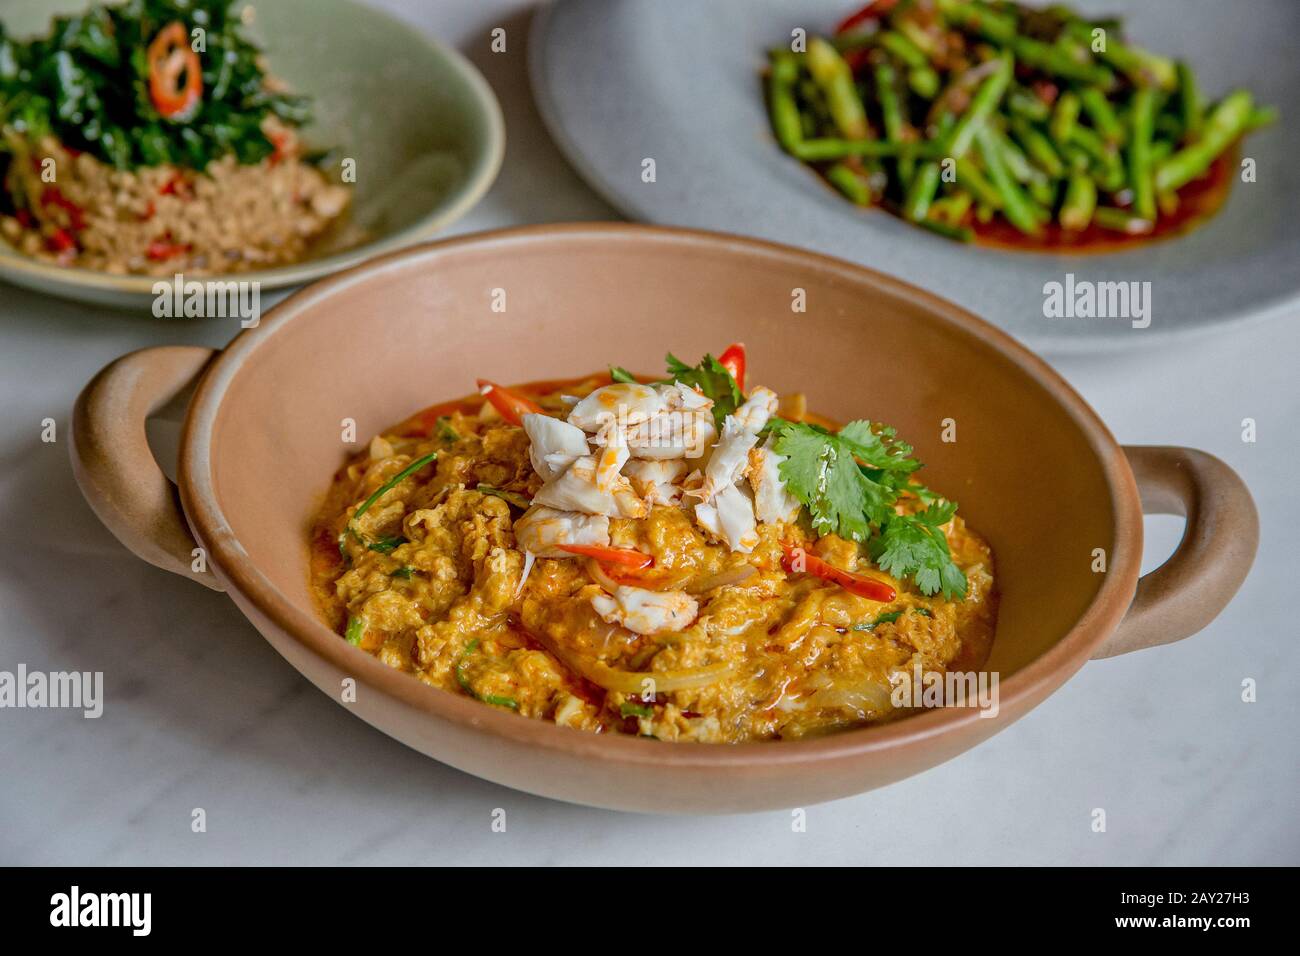 La comida tailandesa se caracteriza por platos ligeramente preparados con fuertes componentes aromáticos y un borde picante. Aquí hay un curry de cangrejo, frijoles largos y cerdo. Foto de stock